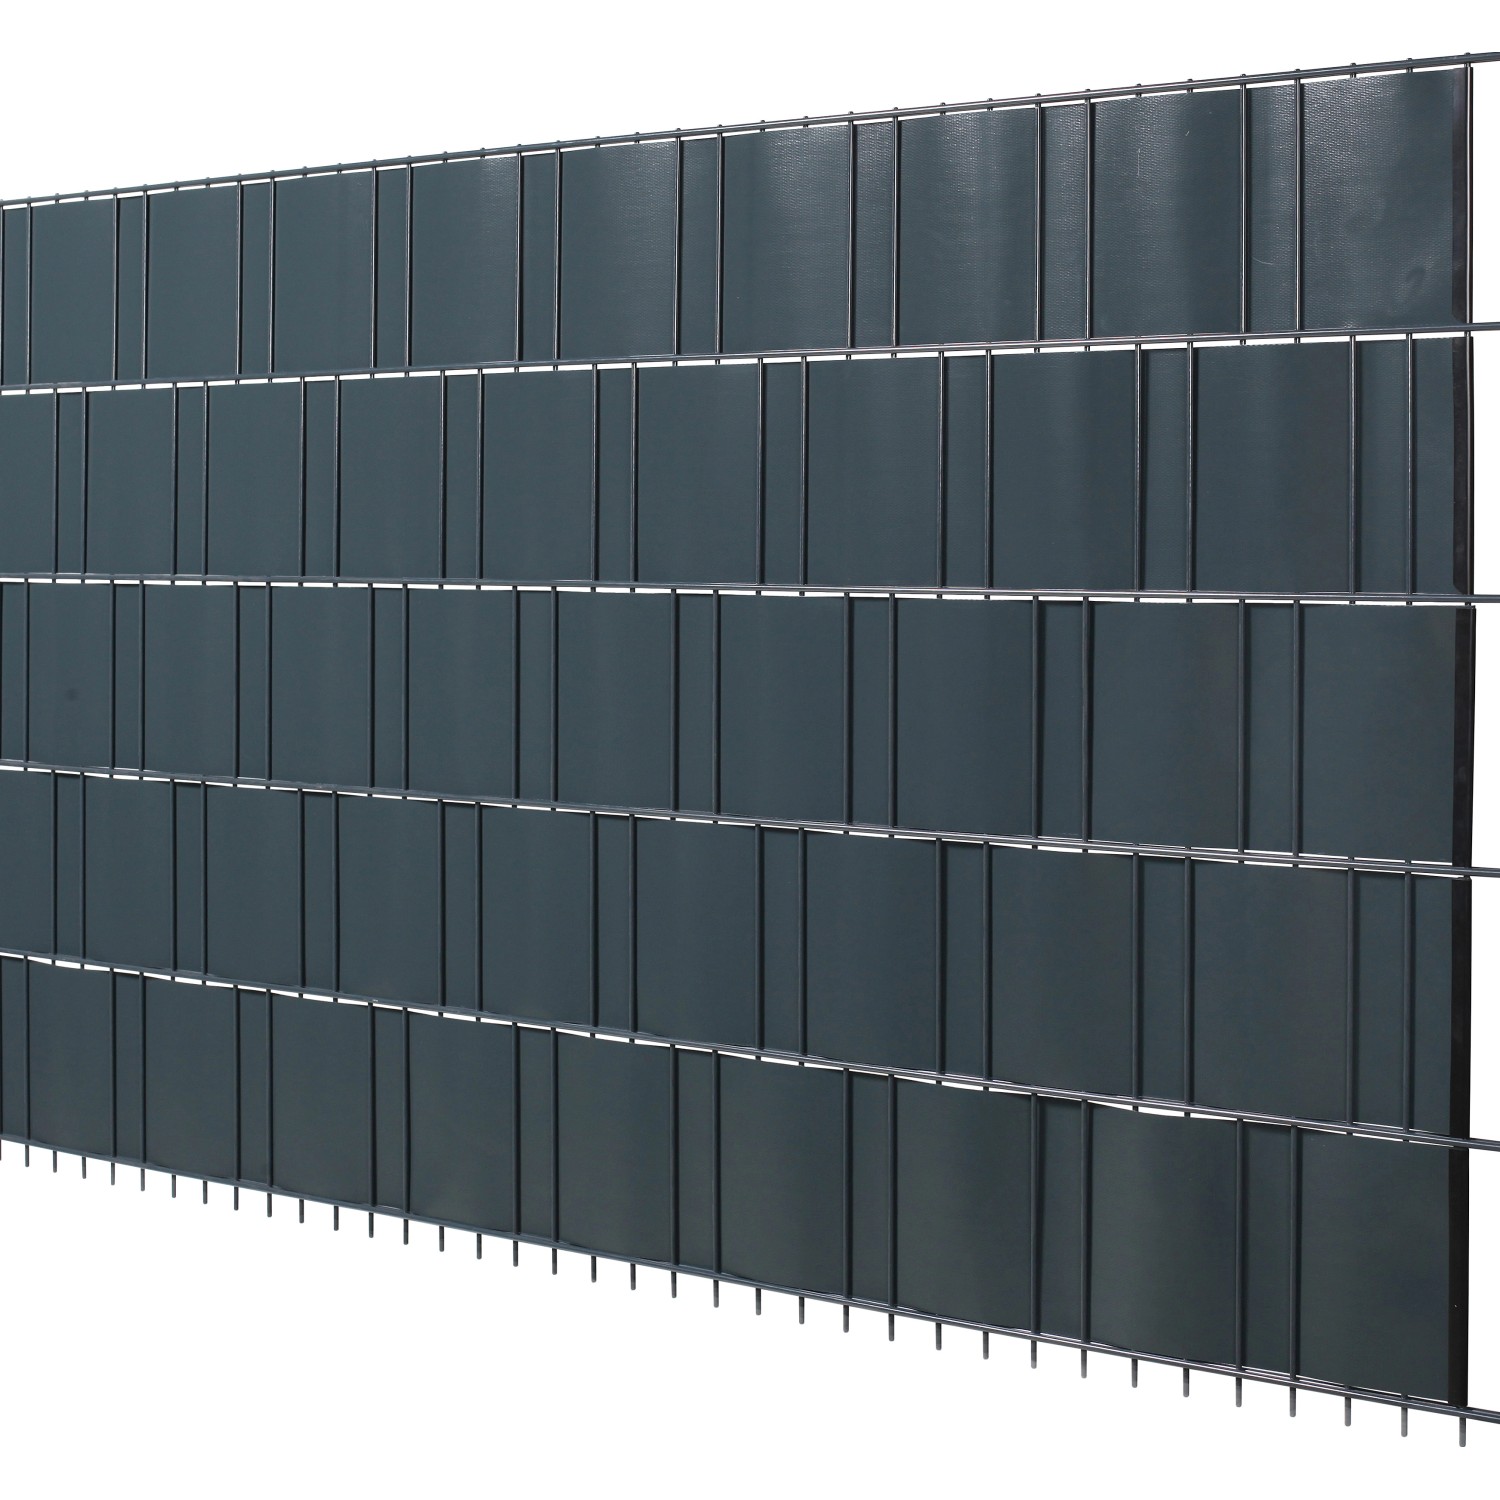 Floraworld PVC-Sichtschutzrolle Anthrazit 19 cm x 20,5 m